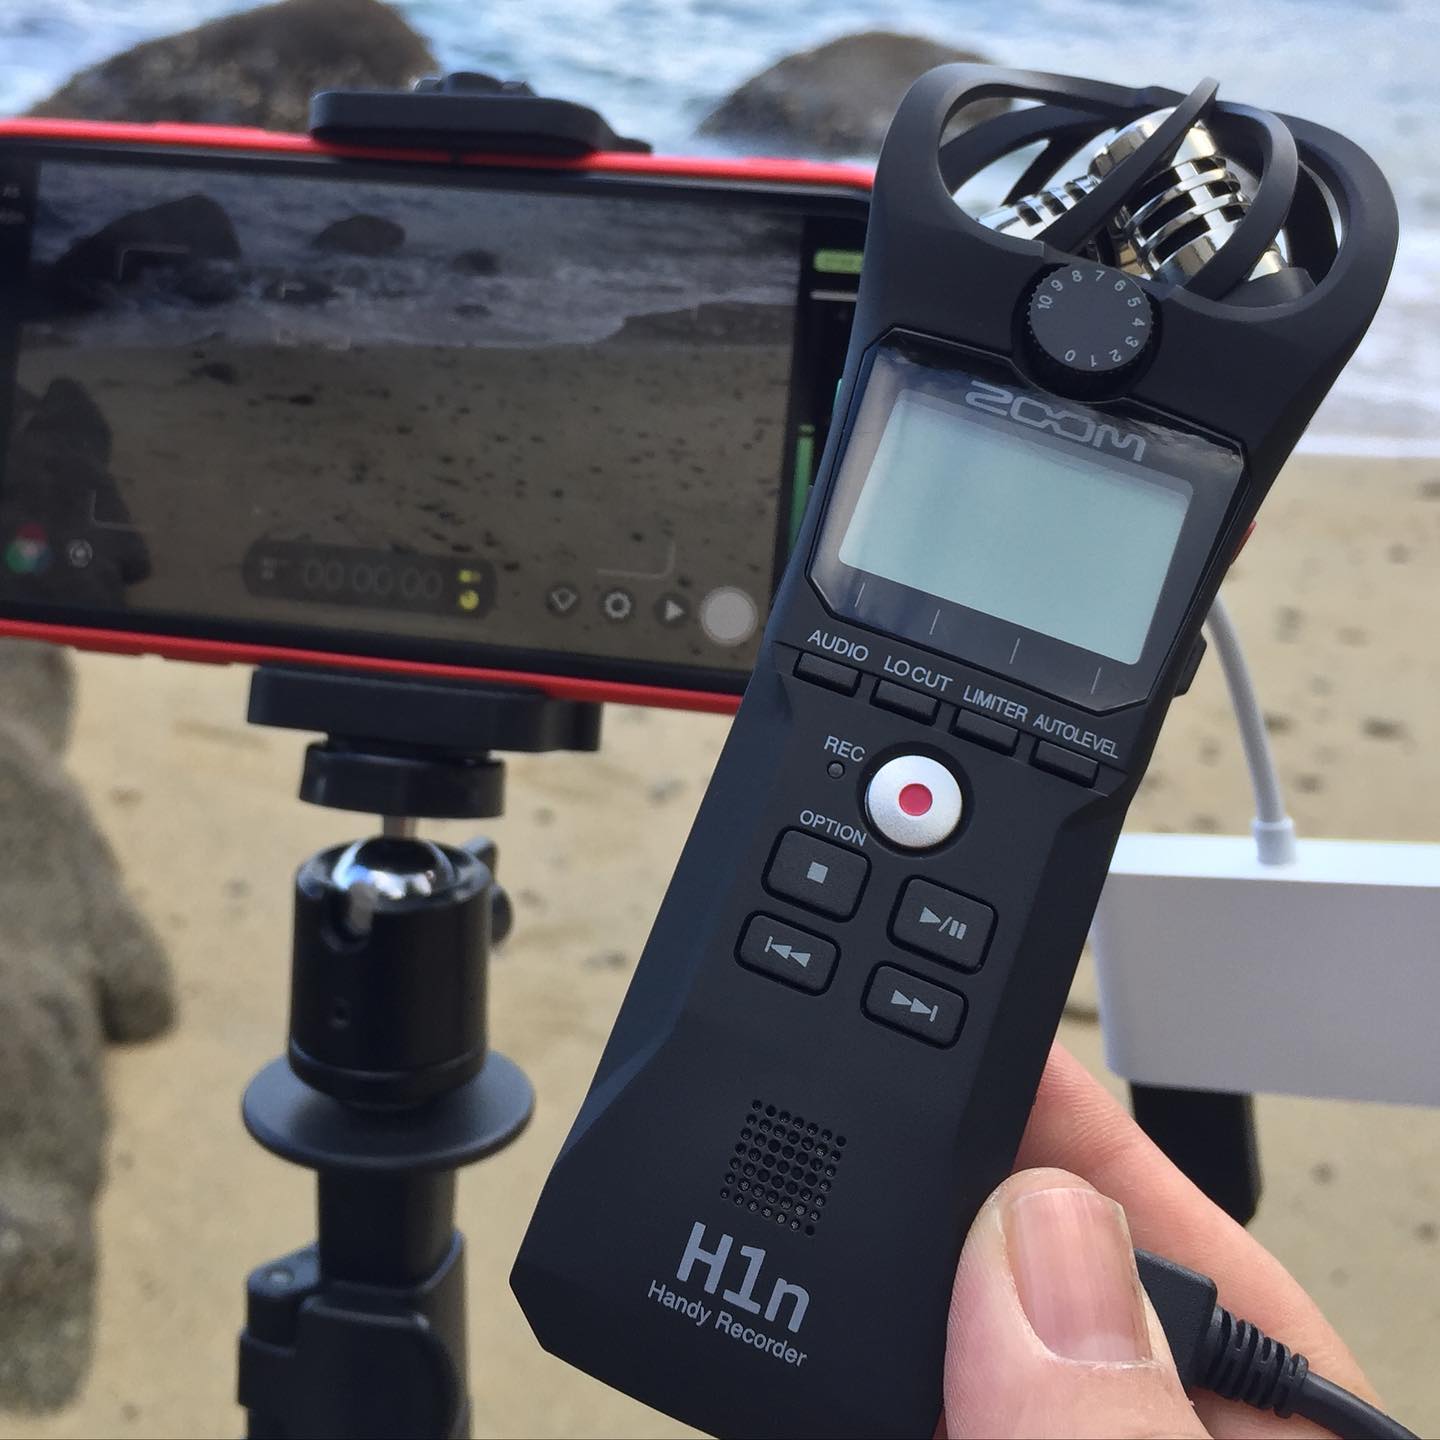 友人から使ってみてと託されたzoomのコンデンサーマイクH1n。どんな感じに音が撮れるのかを試すために、とある海岸に来たけれど…風が強いっ！風の音がゴーゴーと入ってしまうーwwま、それそれとしてまた比較動画作らなくては。